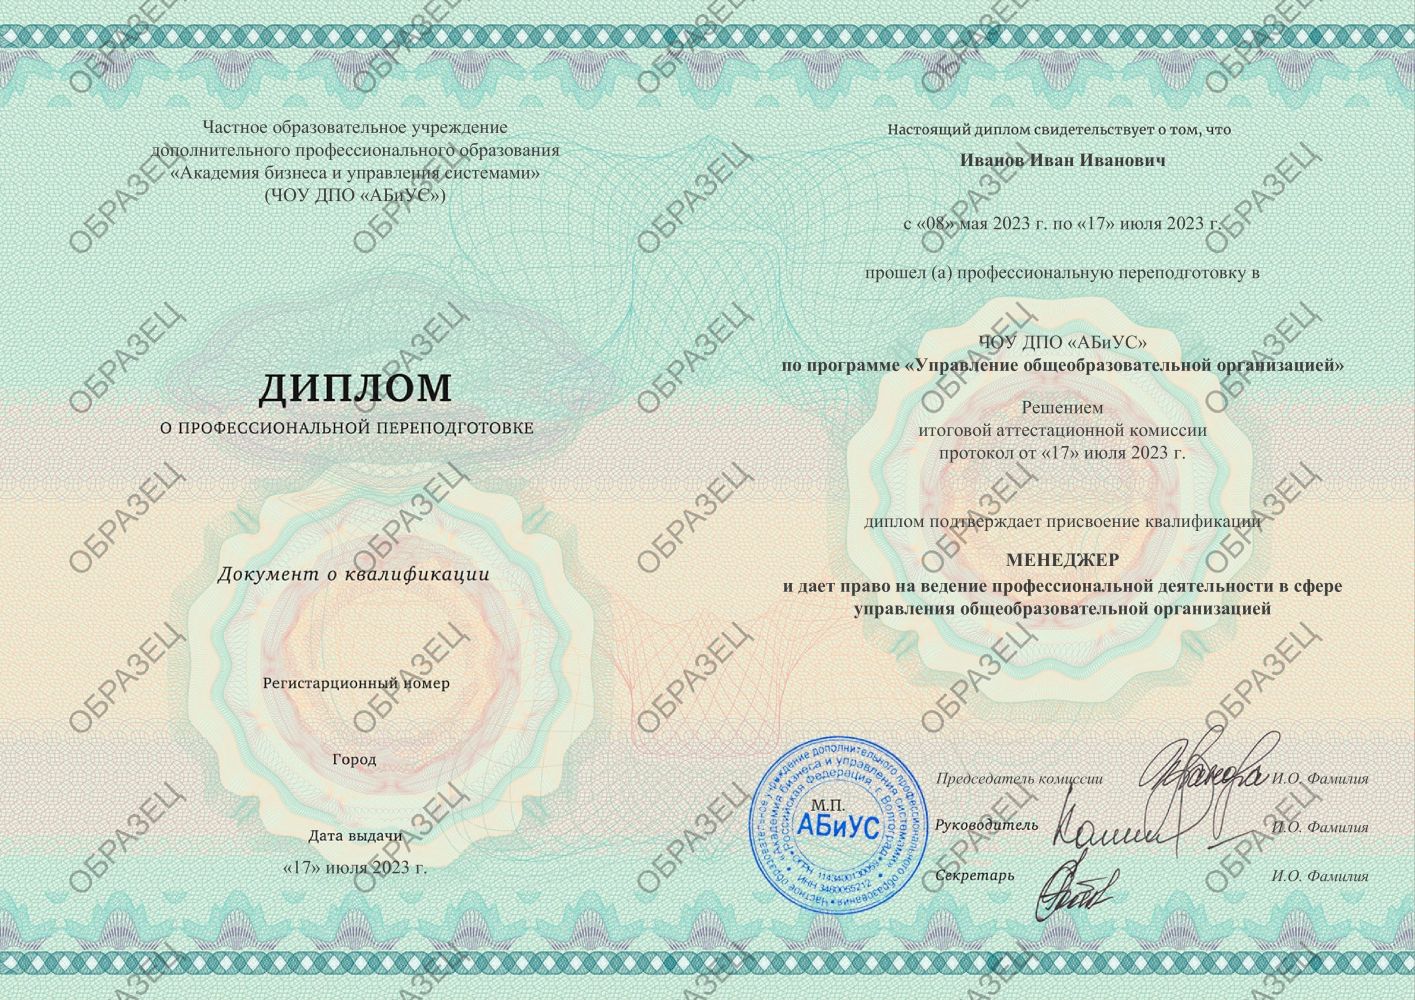 Диплом Управление общеобразовательной организацией 260 часов 8188 руб.